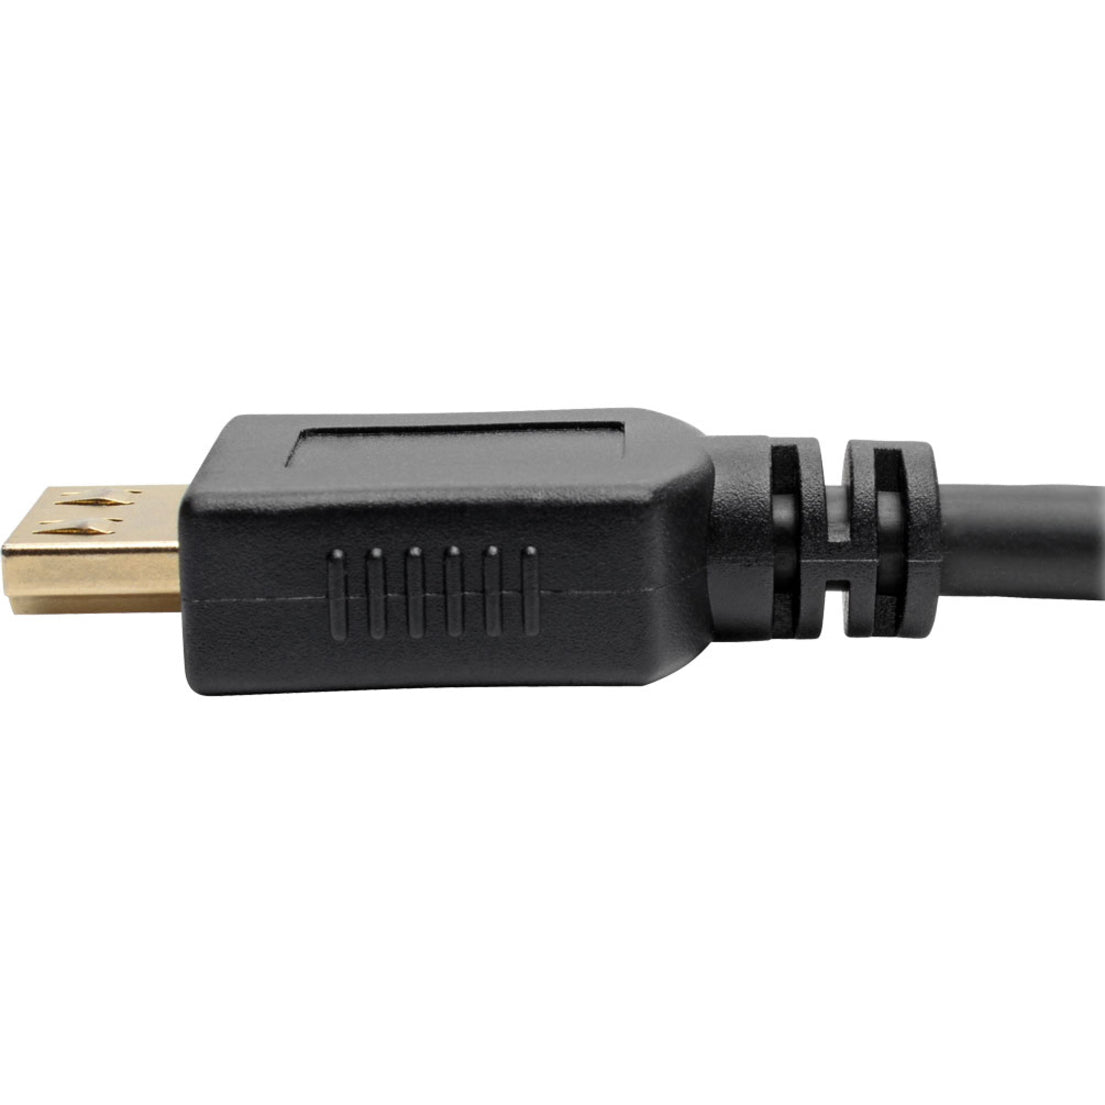 Tripp Lite P568-025-BK-GRP High-Speed HDMI Cable 25 ft. with Gripping Connectors 1080p Black  Tripp Lite P568-025-BK-GRP Câble HDMI haute vitesse 25 pi avec connecteurs Grip 1080p noir